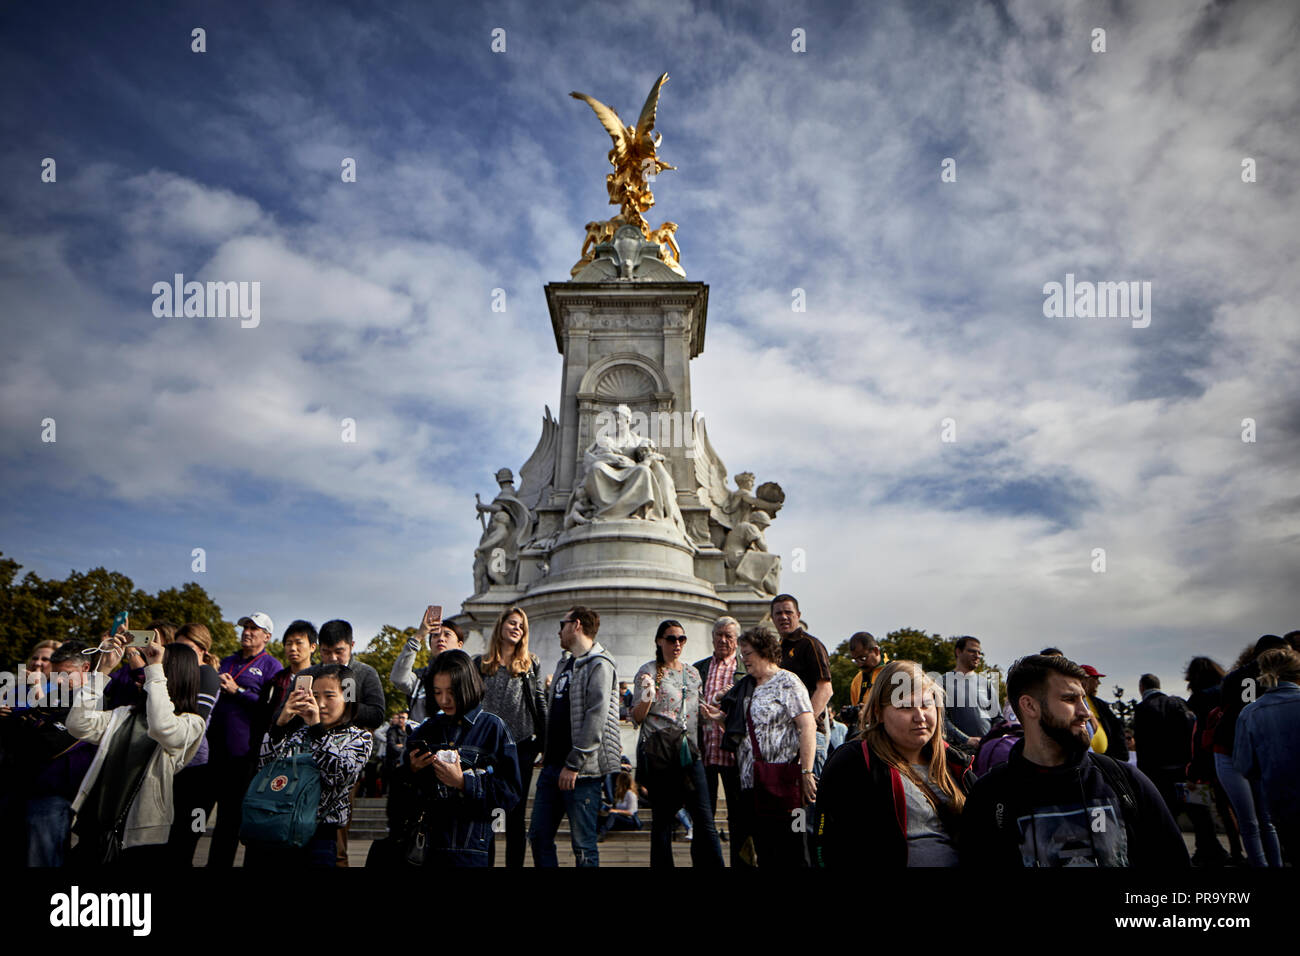 Los turistas esperando en victoria memorial fuente fuera del Palacio de Buckingham la ciudad de Westminster en Londres, la ciudad capital de Inglaterra Foto de stock